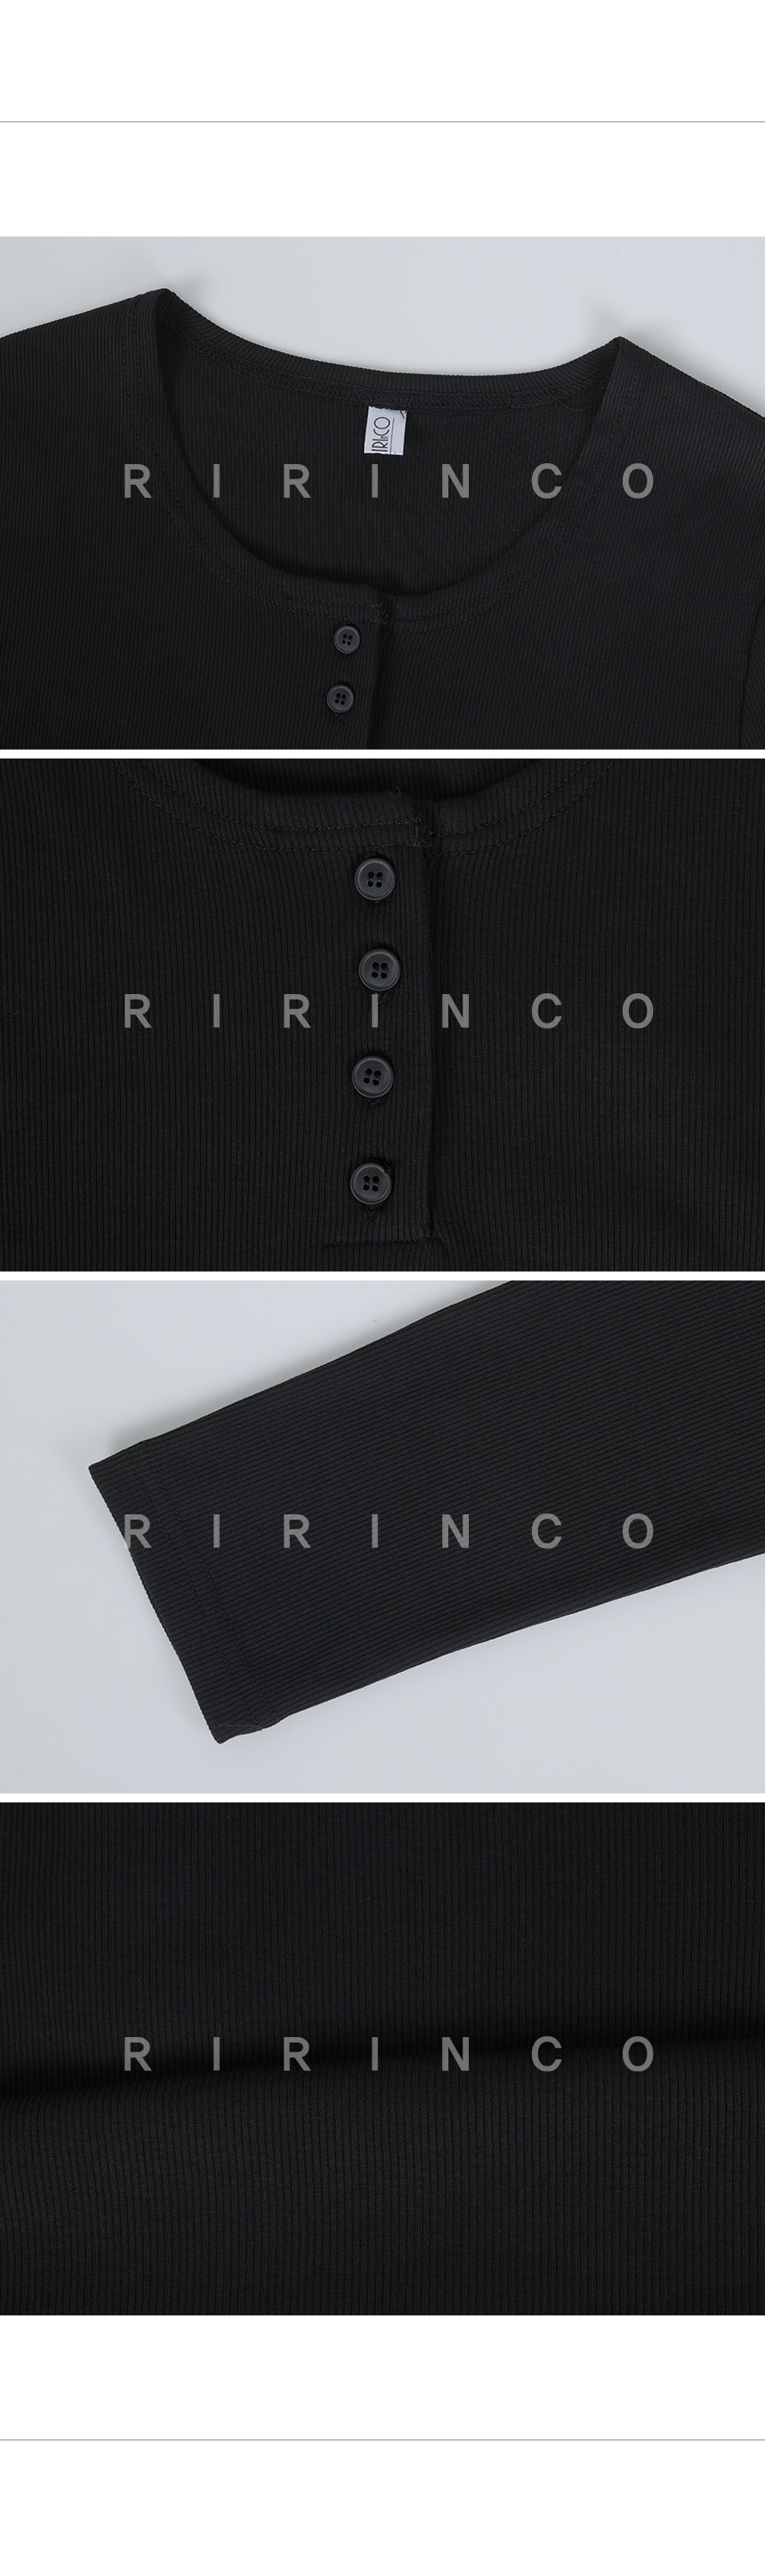 RIRINCO リブラウンドネックボタンルーズフィットTシャツ